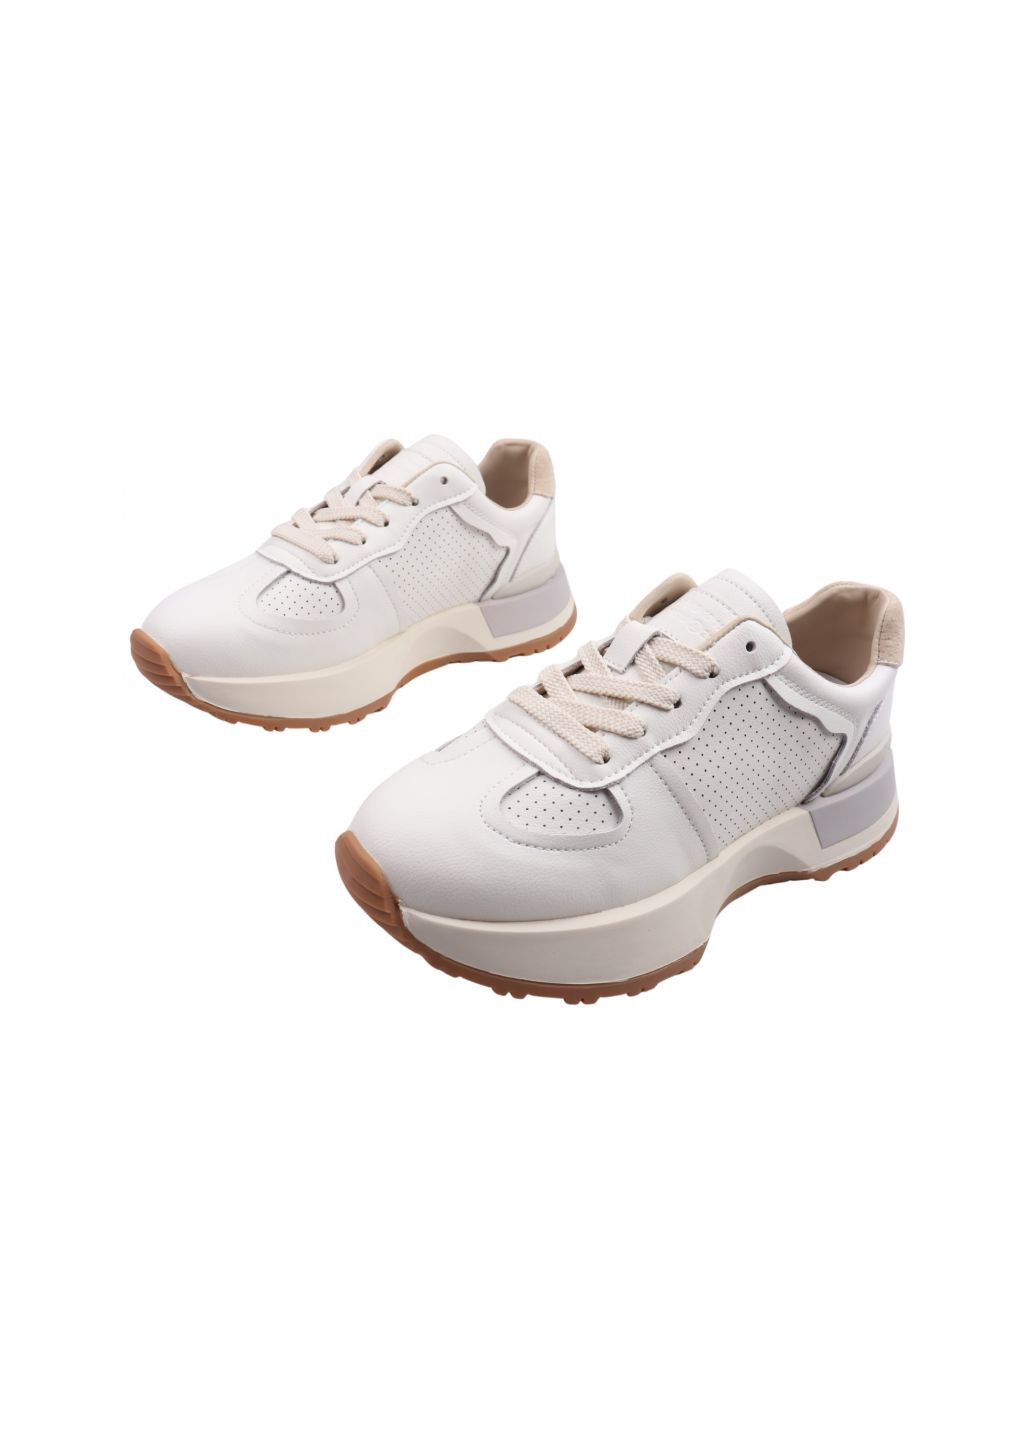 Білі кросівки жіночі молочні натуральна шкріа Lifexpert 1232-23DK